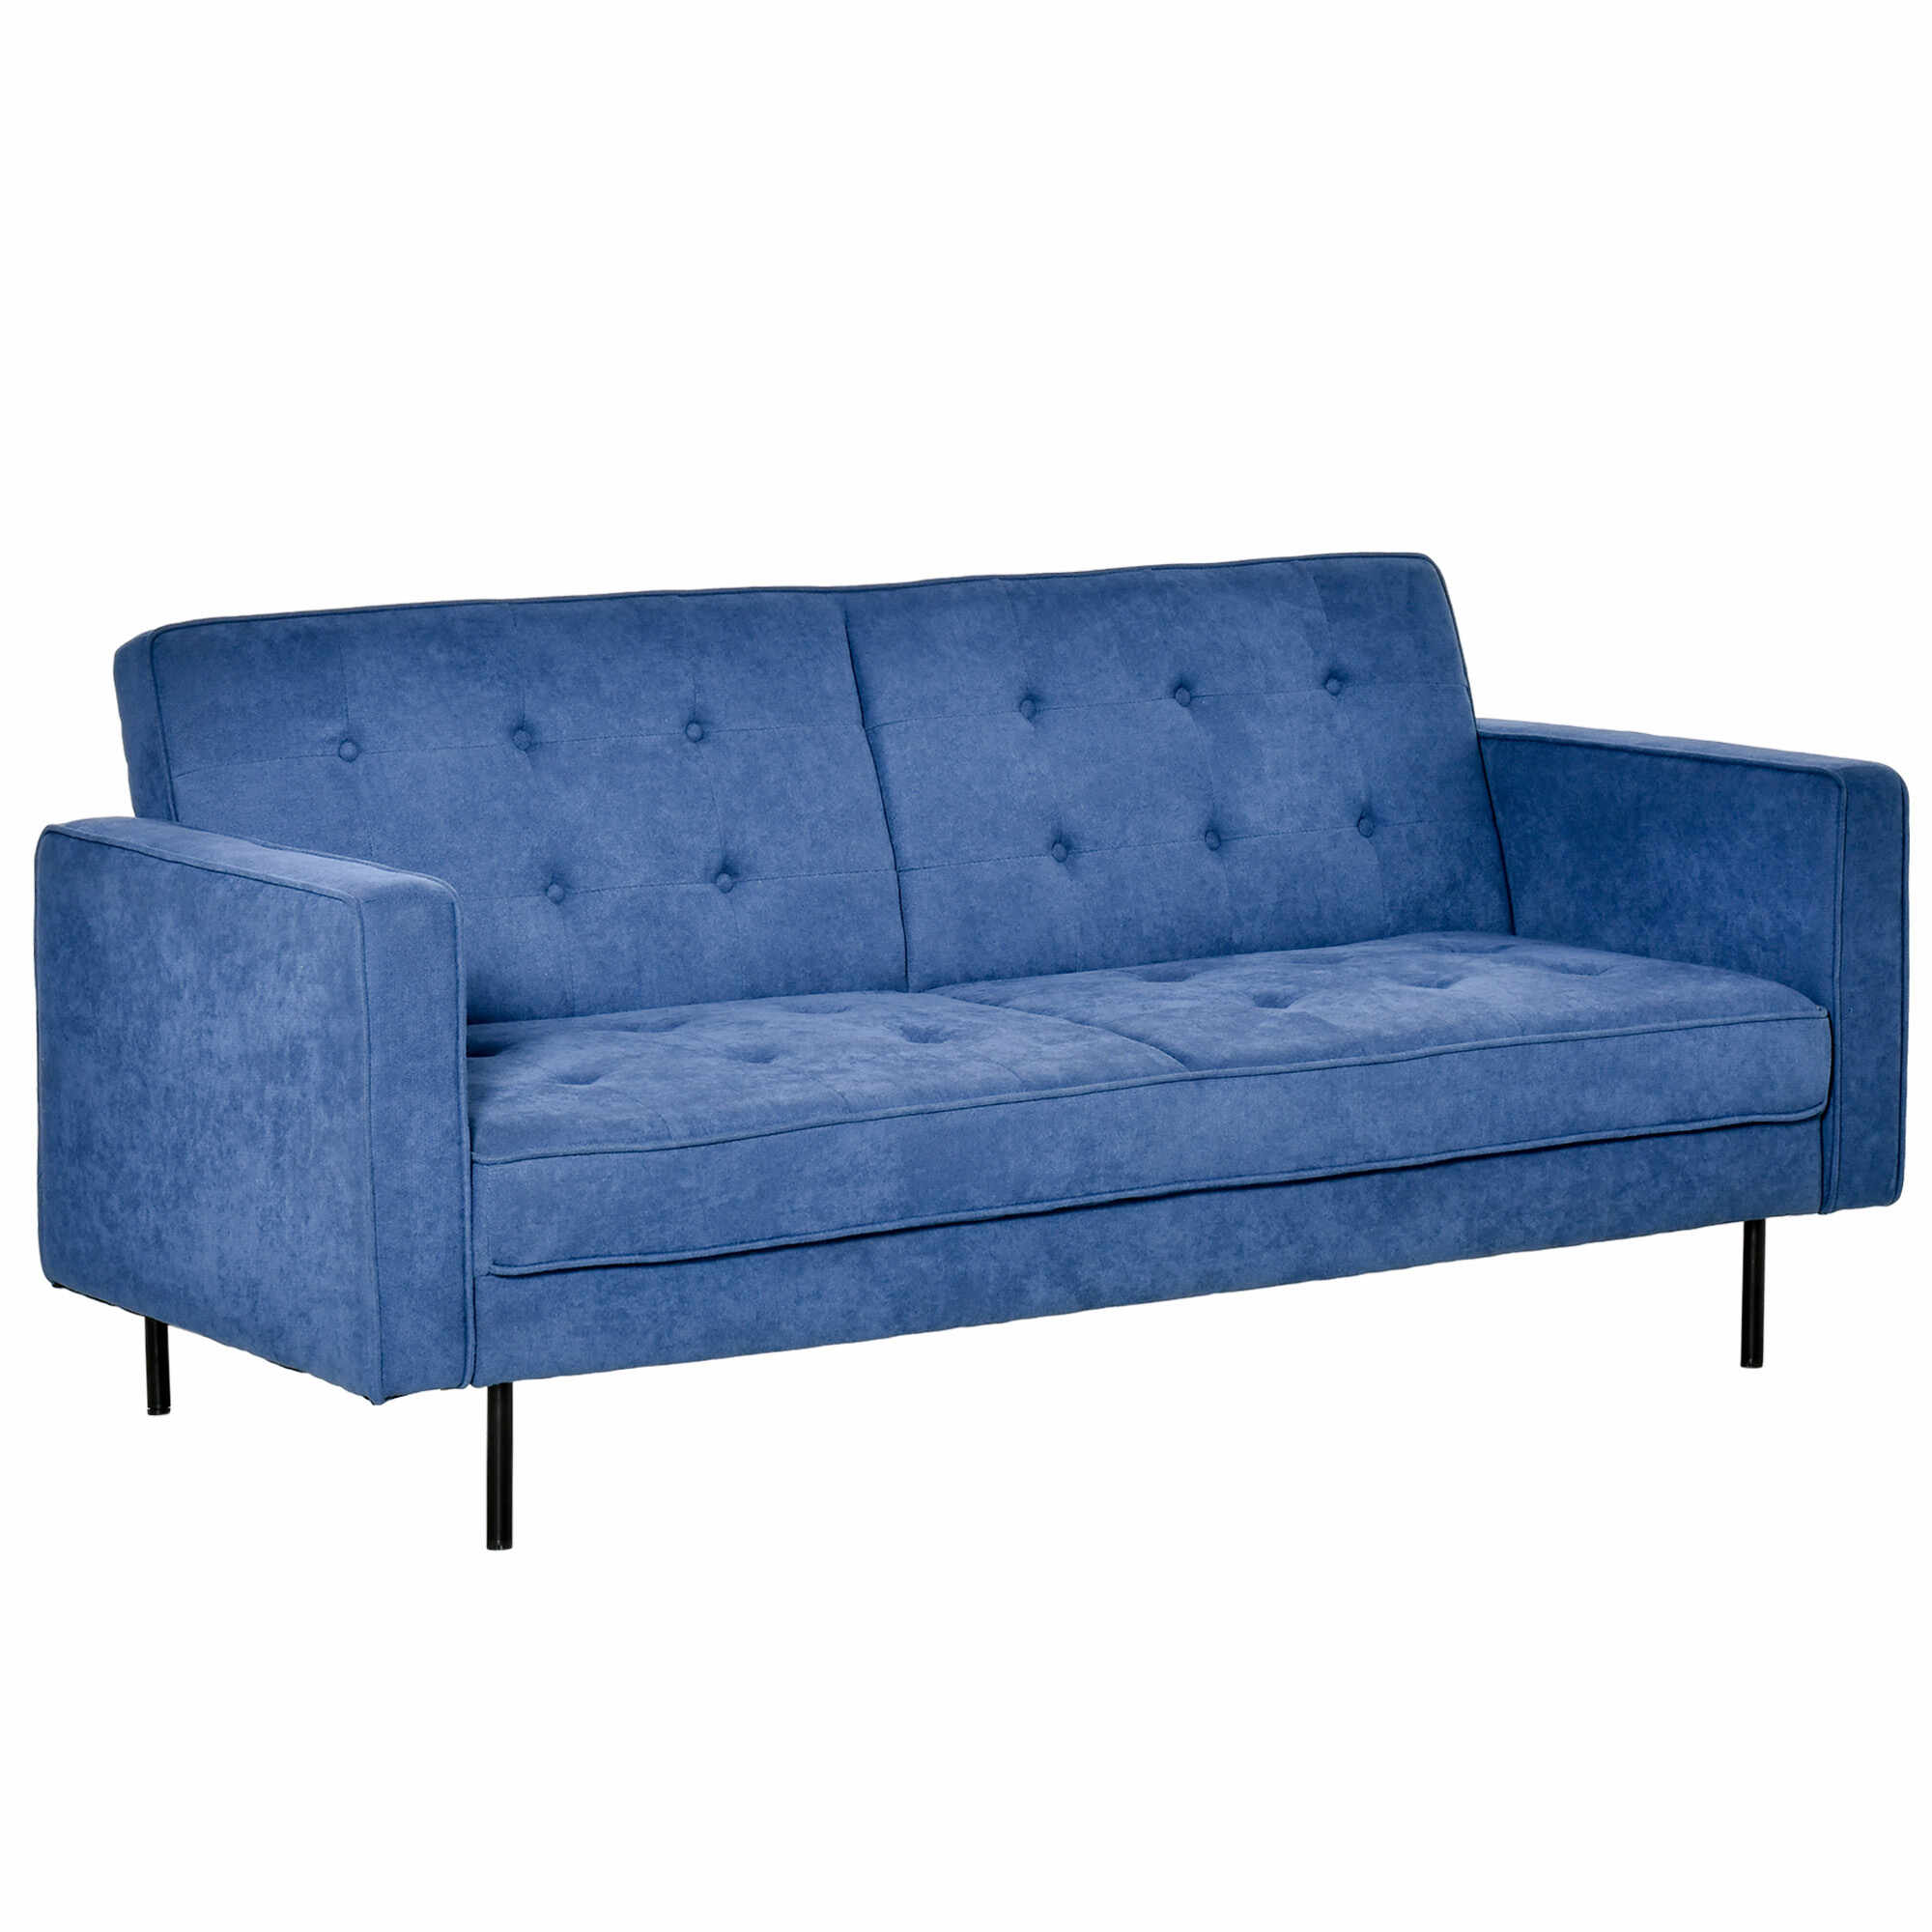 HOMCOM Canapea pat din material textil si picioare din metal, canapea cu 3 locuri cu spatar reglabil pe 3 niveluri, albastru